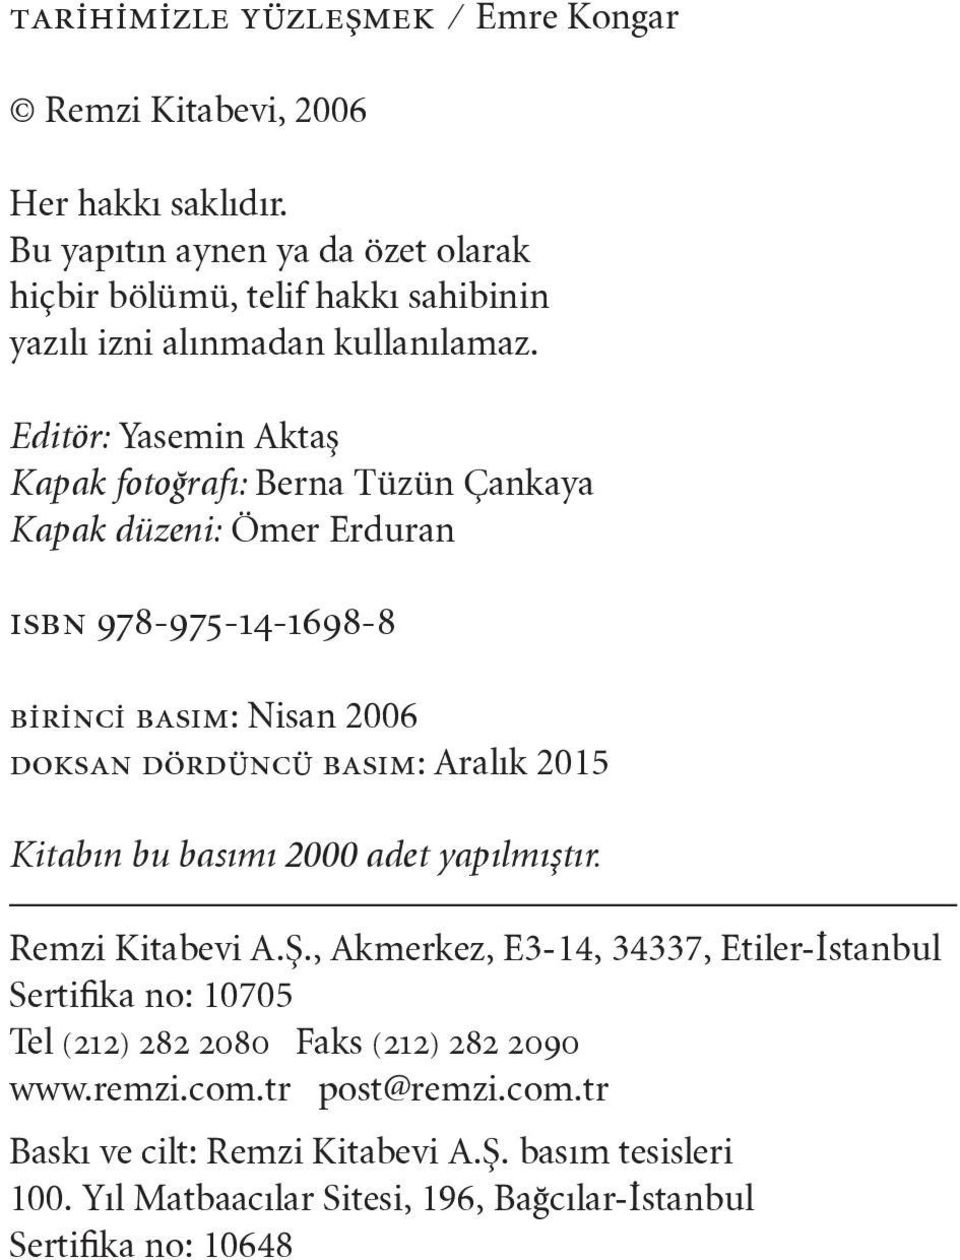 Editör: Yasemin Aktaş Kapak fotoğrafı: Berna Tüzün Çankaya Kapak düzeni: Ömer Erduran ısbn 978-975-14-1698-8 birinci basım: Nisan 2006 doksan dördüncü basım: Aralık 2015